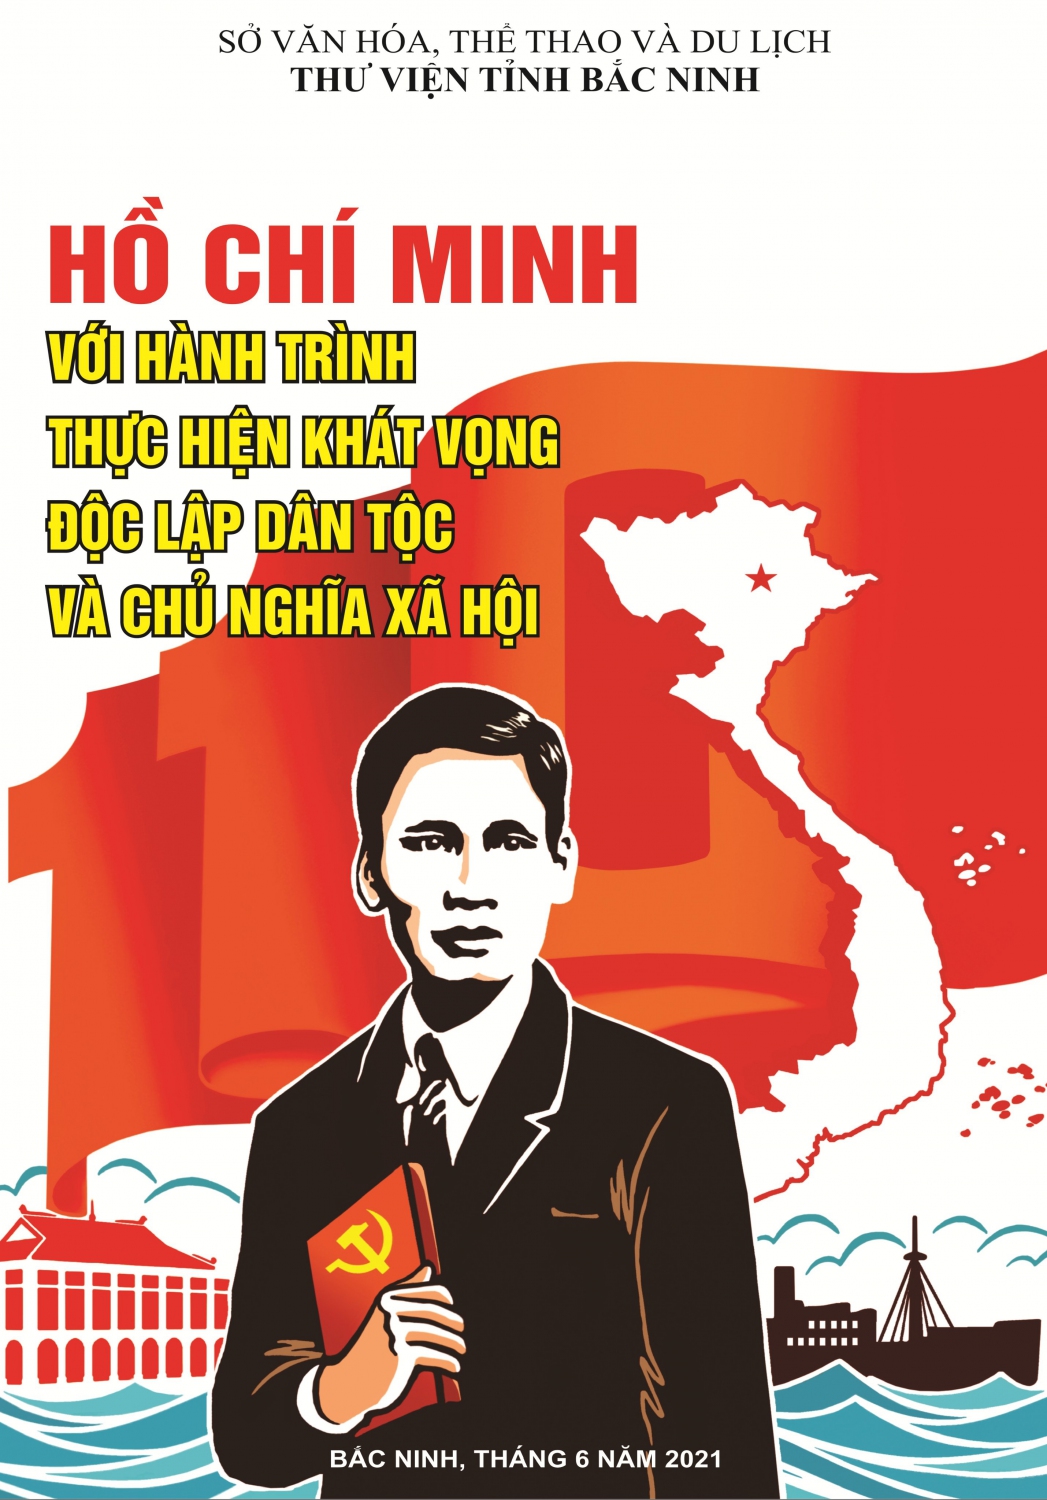 Hồ Chí Minh với hành trình thực hiện khát vọng độc lập dân tộc và chủ nghĩa xã hội